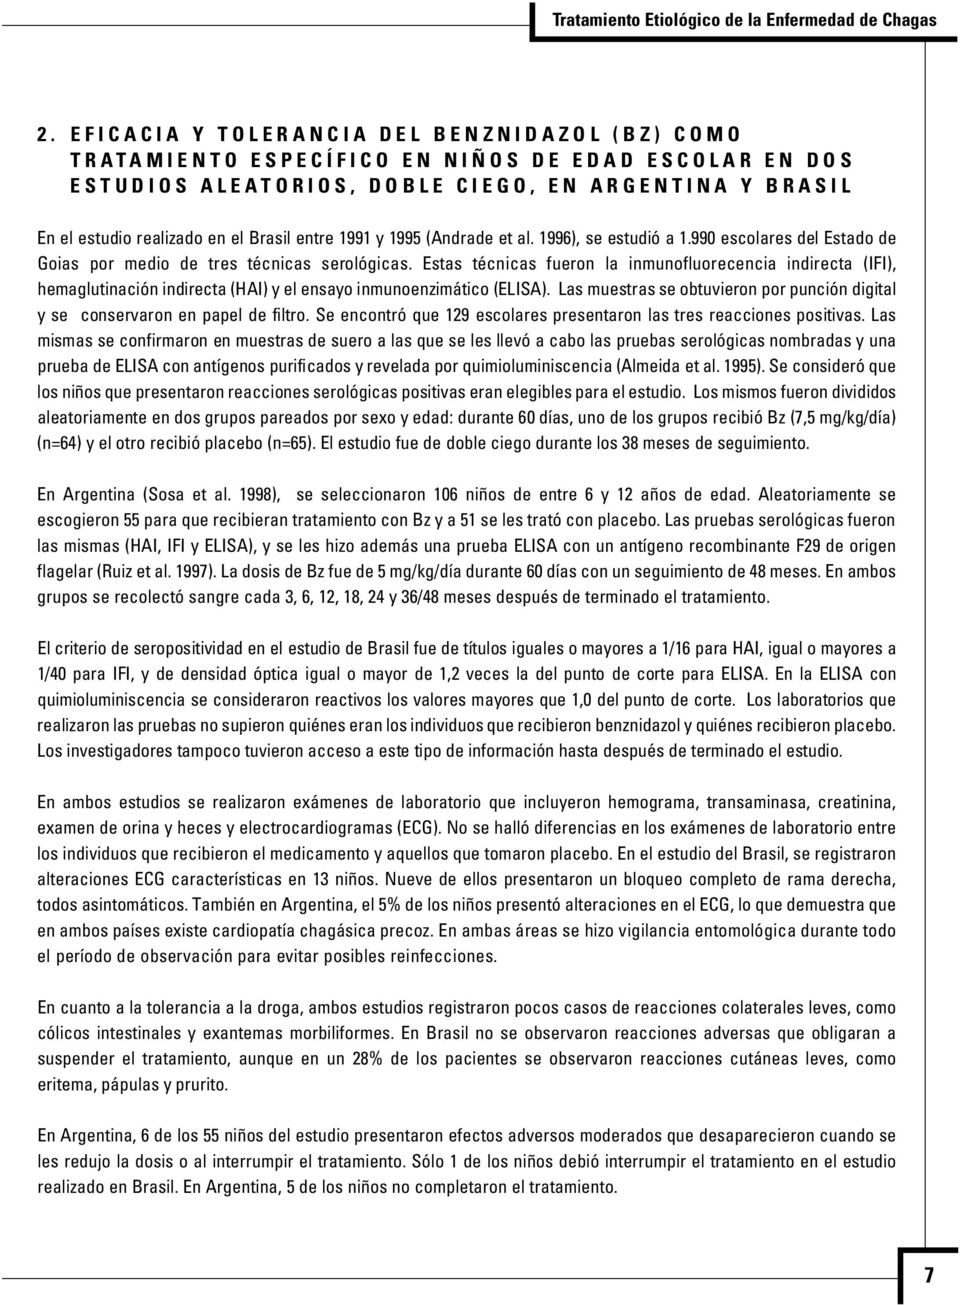 990 escolares del Estado de Goias por medio de tres técnicas serológicas.